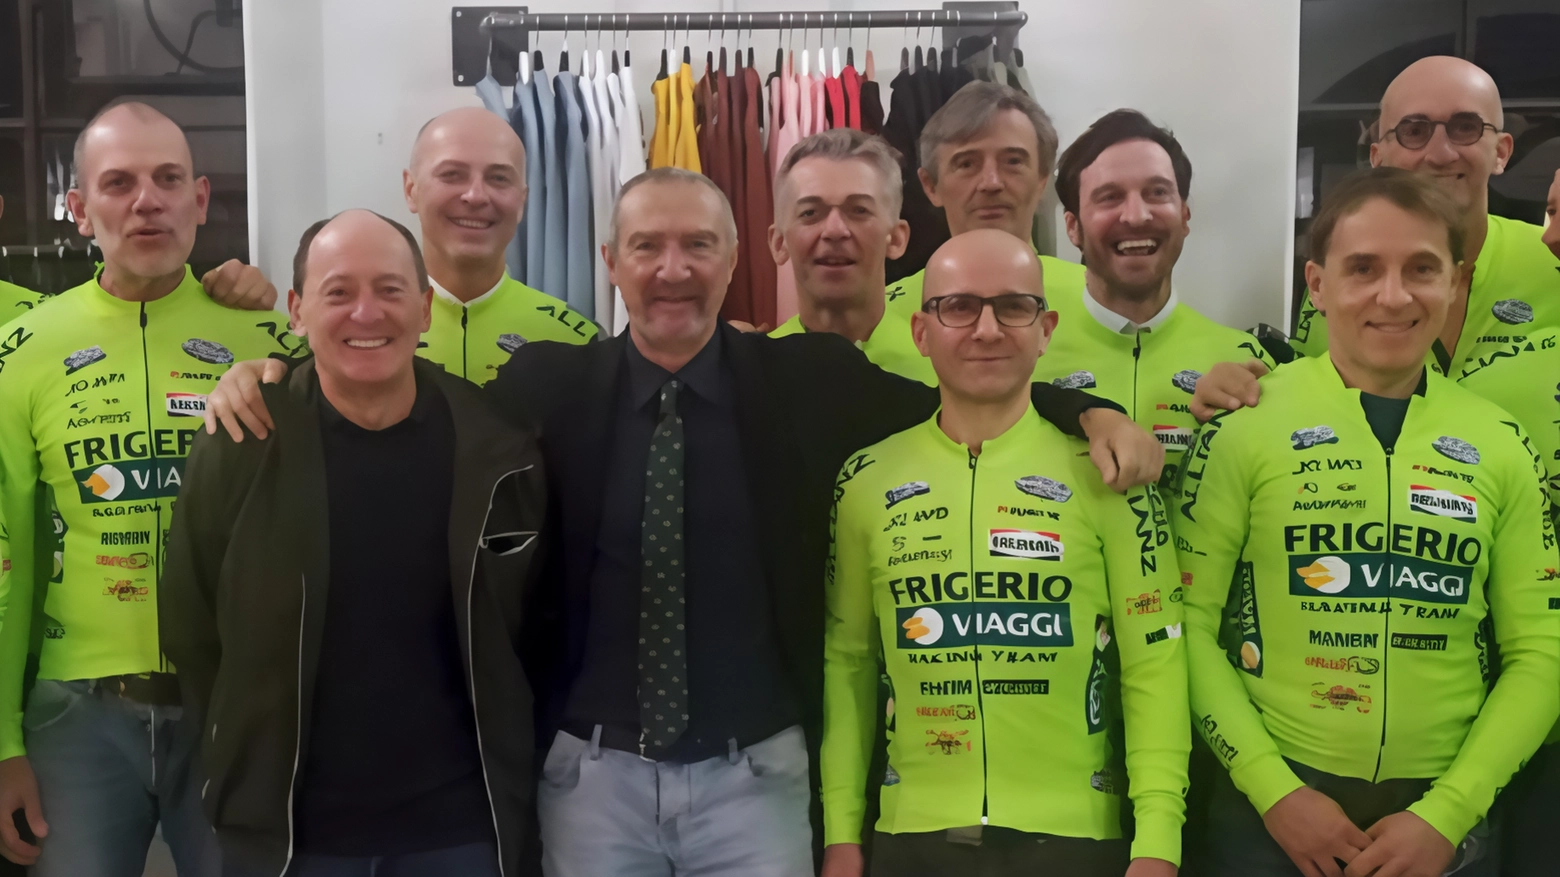 Il Team Frigerio Viaggi trionfa nel Bresciano con Filippo Beoni che vince il Memorial Francesco Leone battendo in volata il compagno Giustolisi. Successi anche per Passi, Braggio e Tabarelli. Il team festeggia una nuova tripletta.